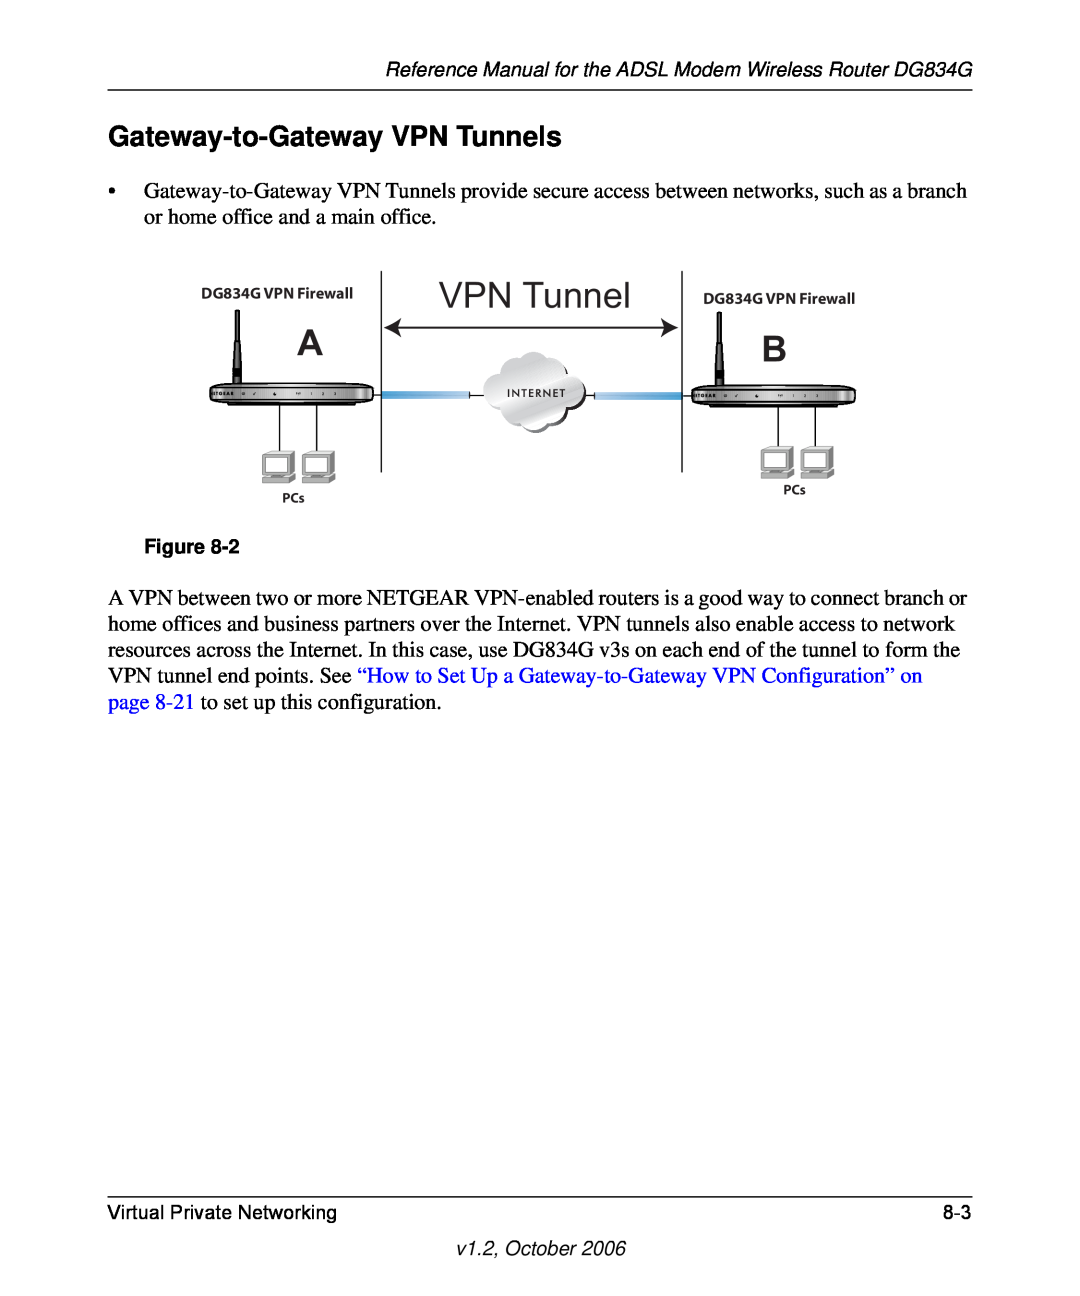 NETGEAR manual VPN Tunnel, Virtual Private Networking, v1.2, October, DG834G VPN Firewall 